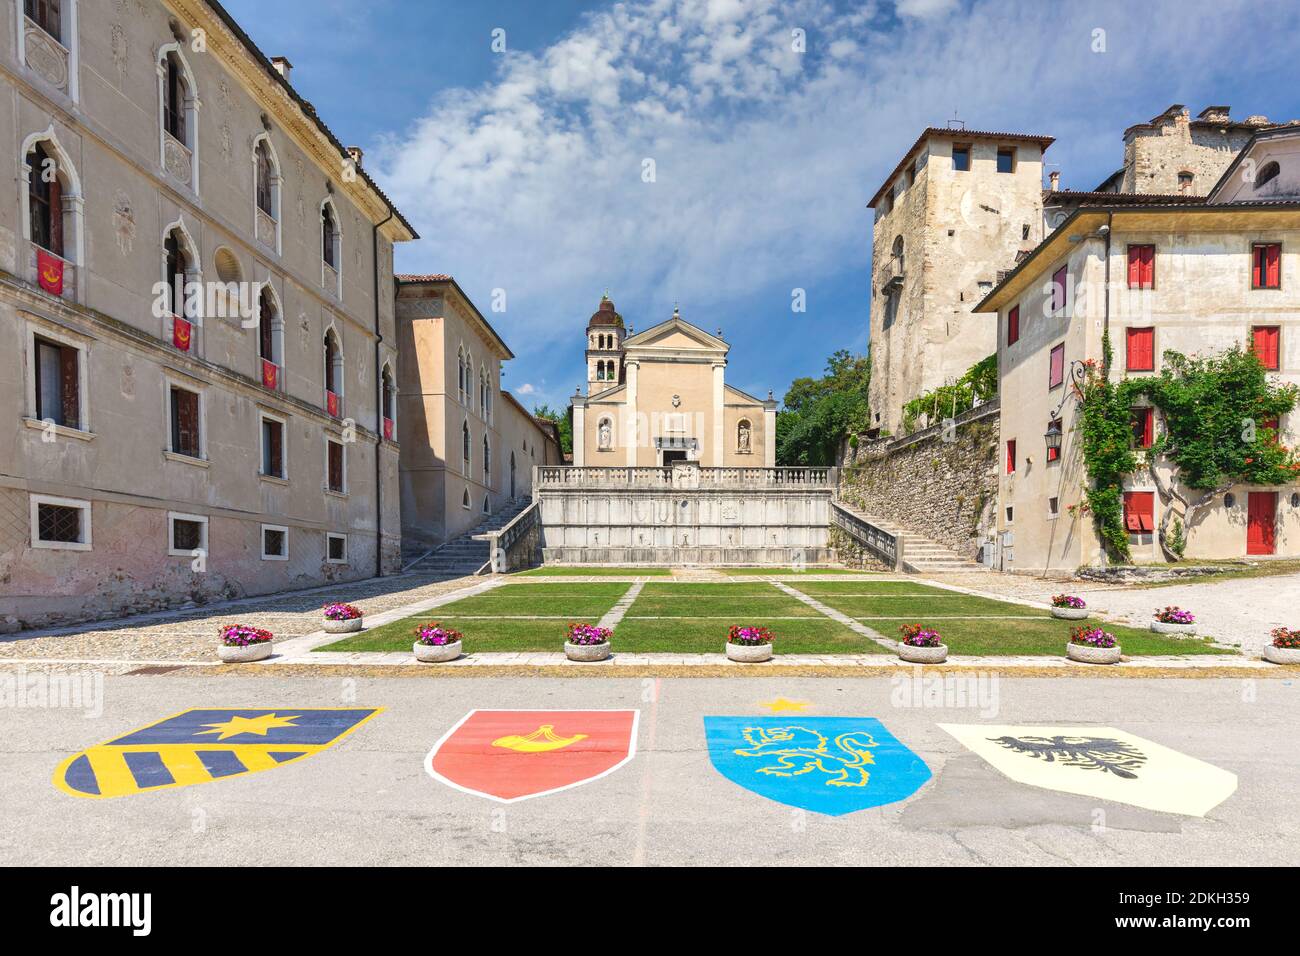 Italien, Venetien, Belluno, das historische Zentrum von Feltre mit den vier Wappen der Bezirke des palio, die Kirche von St. Roch und das Schloss von Alboin Stockfoto